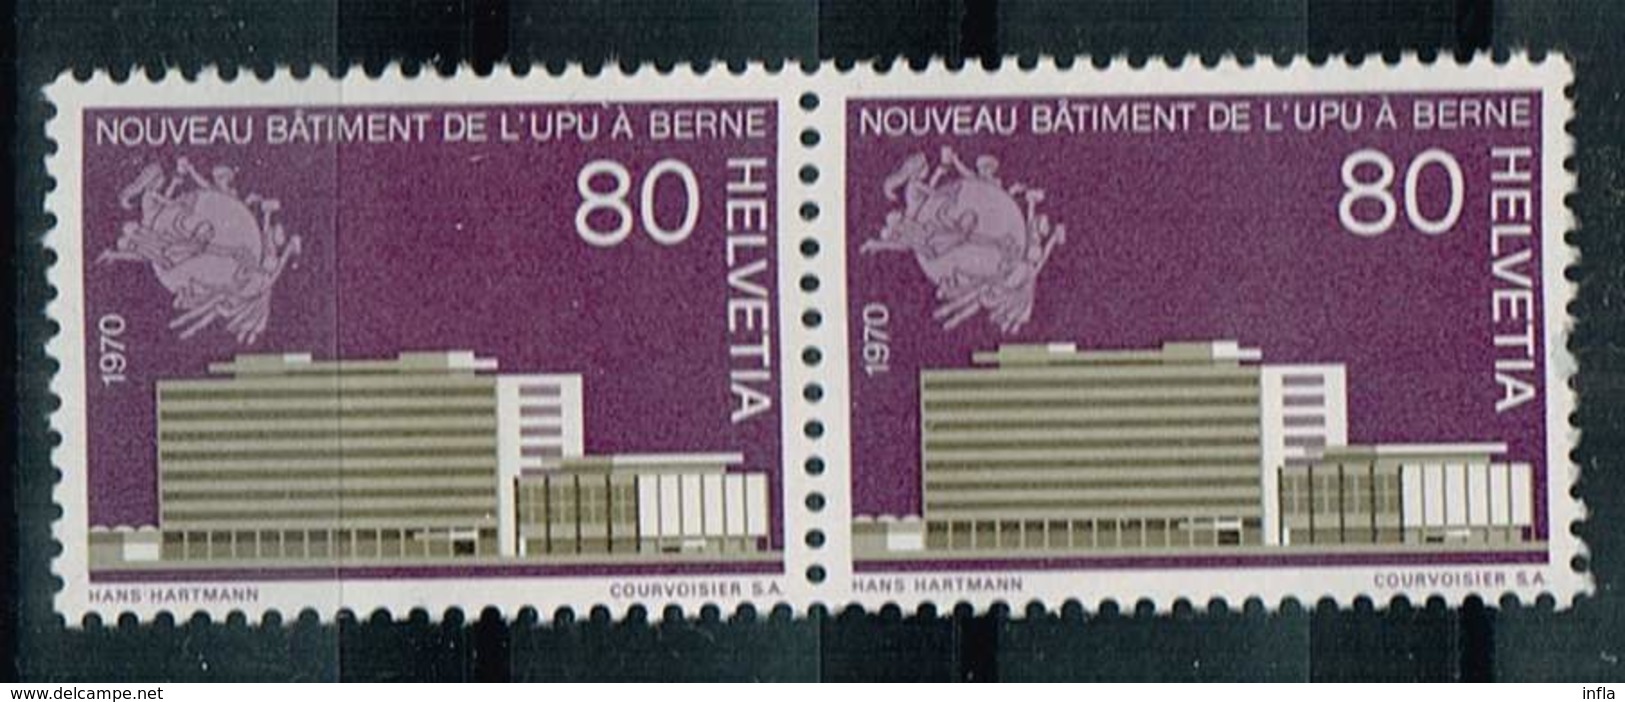 Schweiz 1970, Michel 922 ** U.P.U. Building, Bern - Ungebraucht